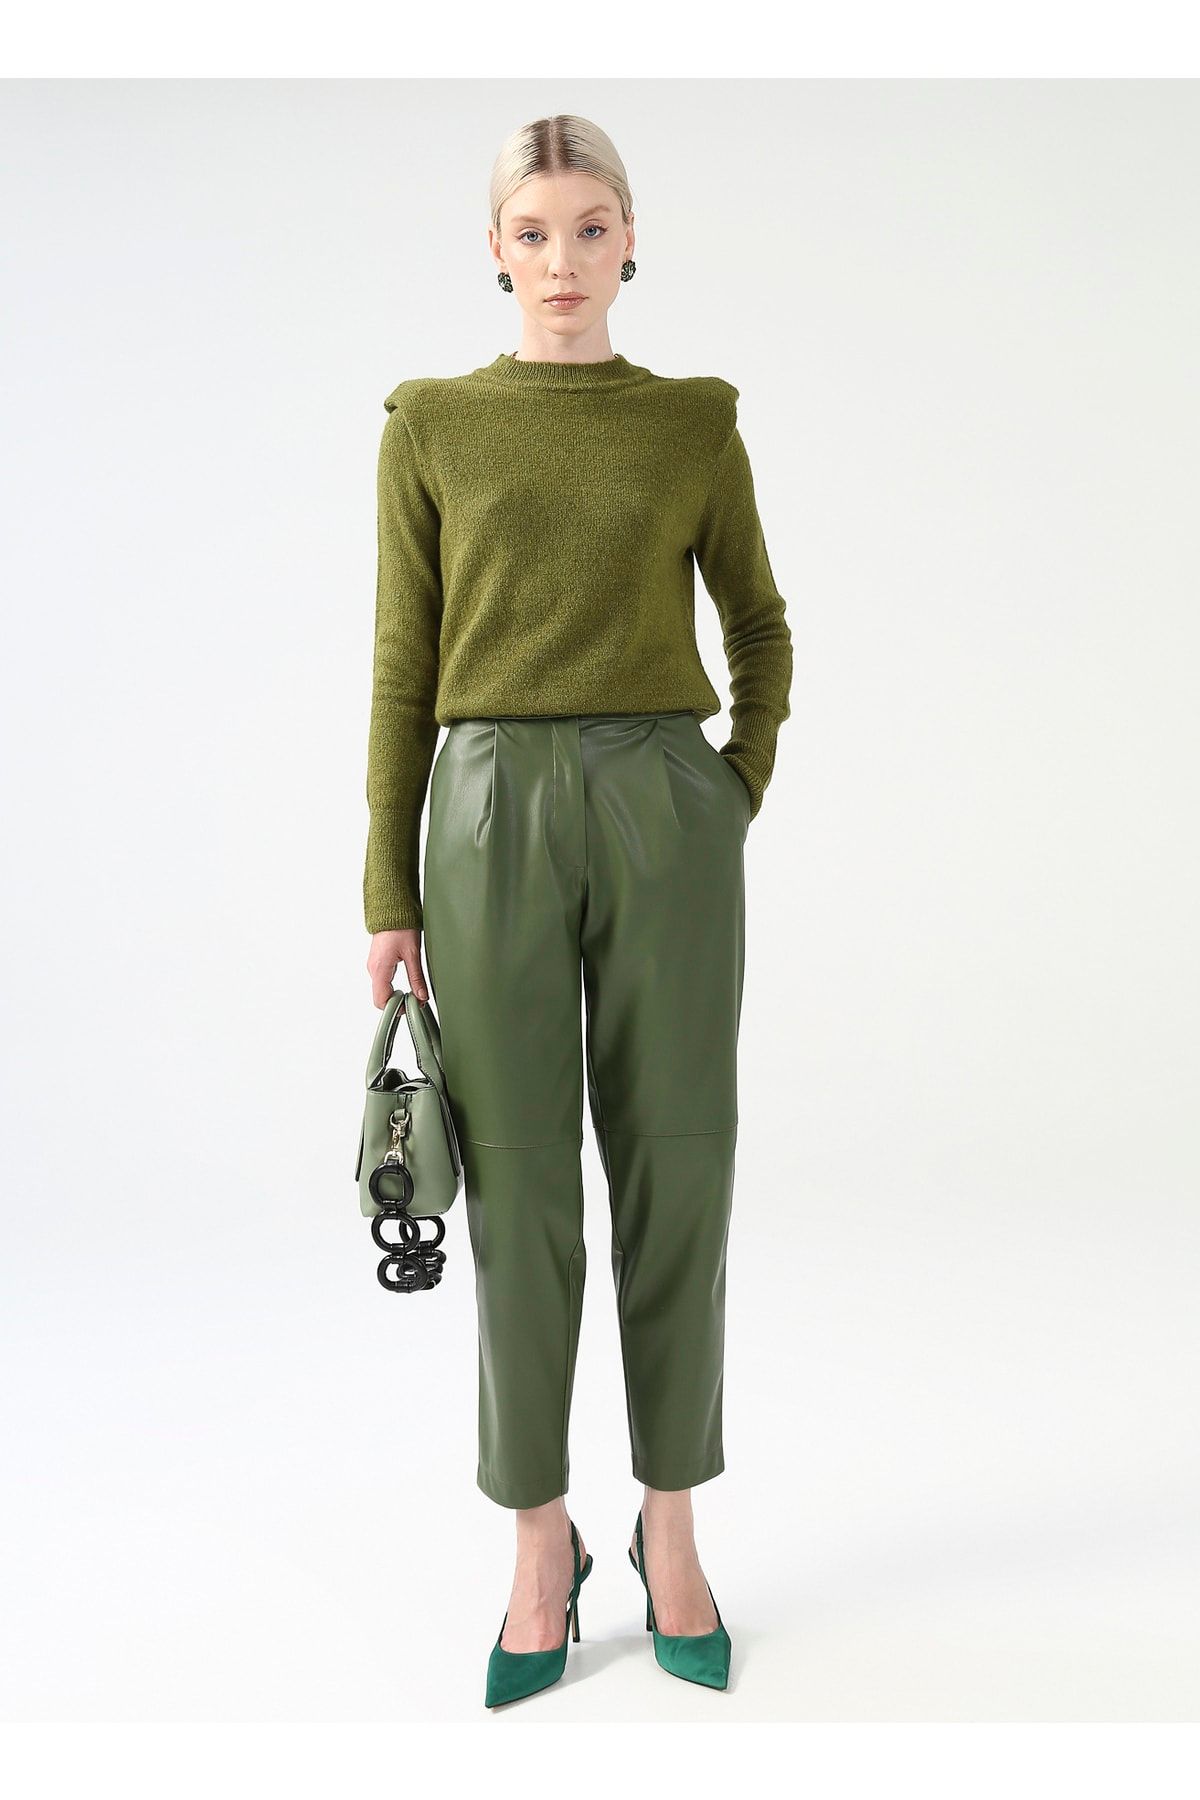 Fabrika Normal Bel Basic Yeşil Kadın Pantolon Ymn-16